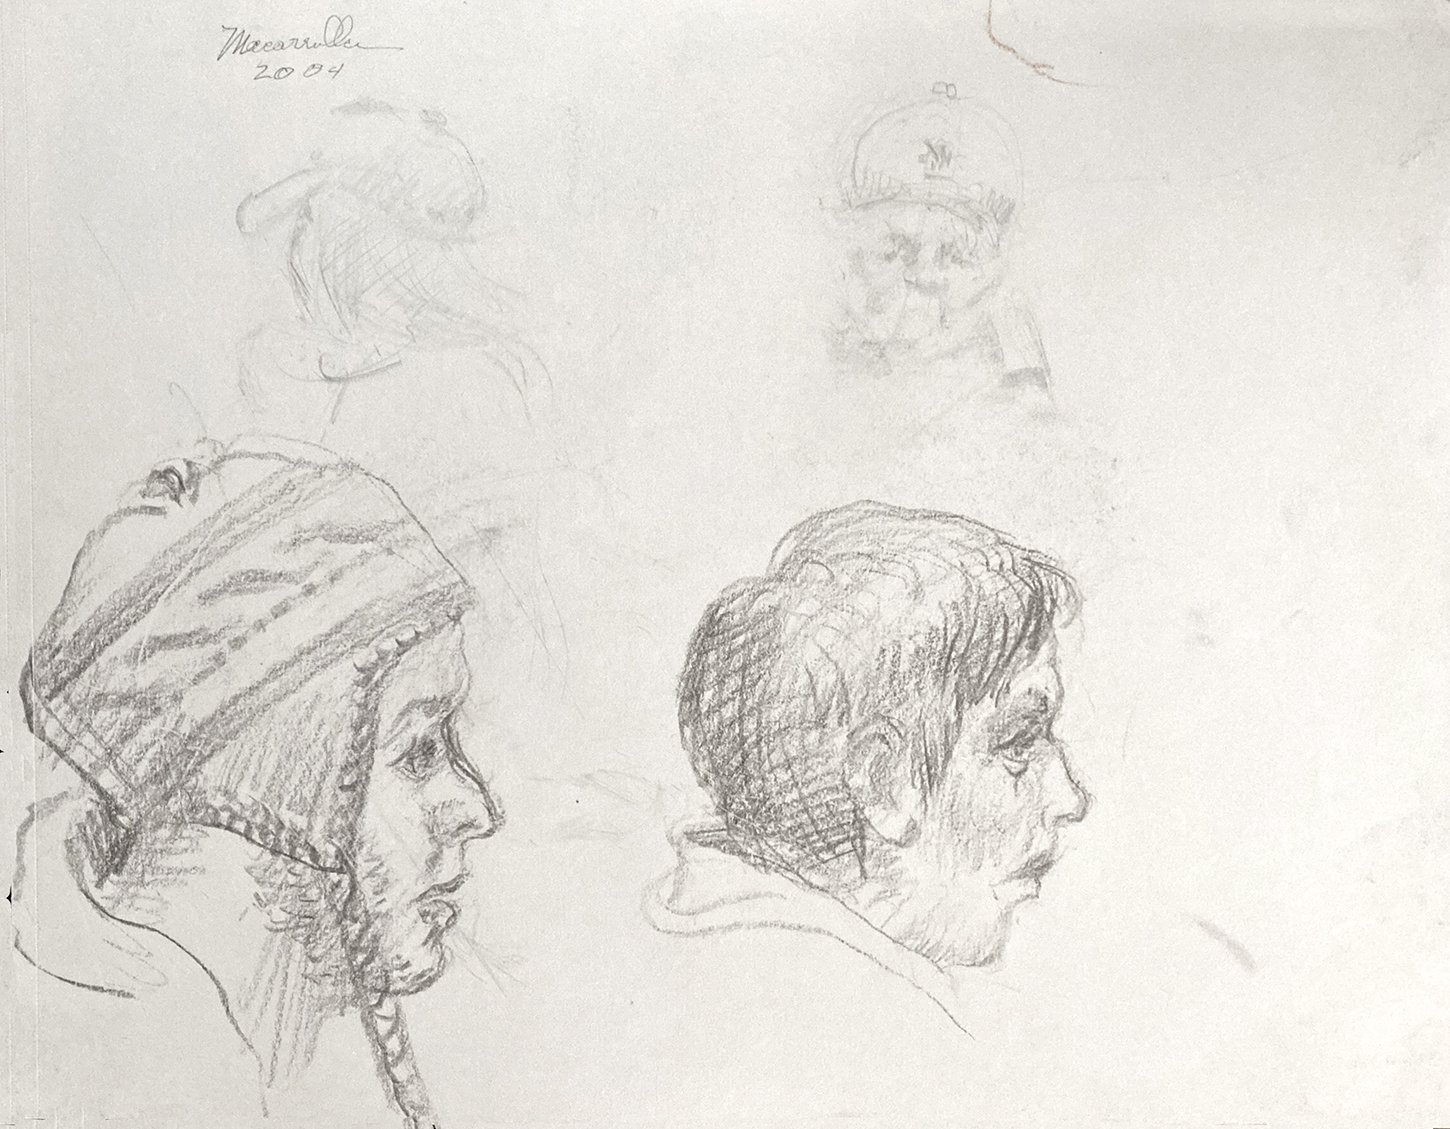  Head studies, 2004. Pencil. 9” X 12”. 